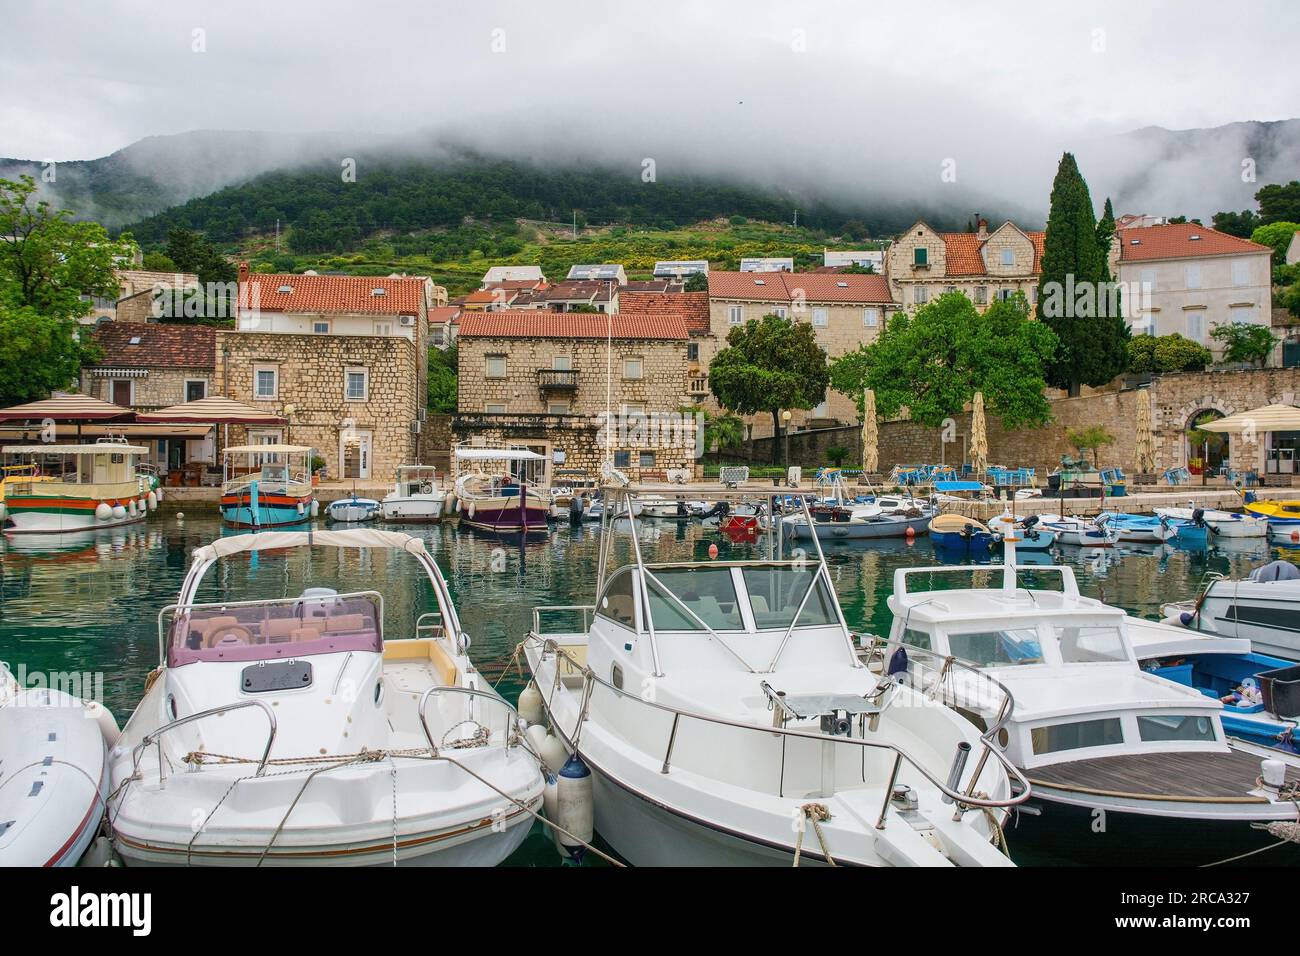 La zone portuaire de la ville de bol sur l'île de Brac, Croatie Banque D'Images